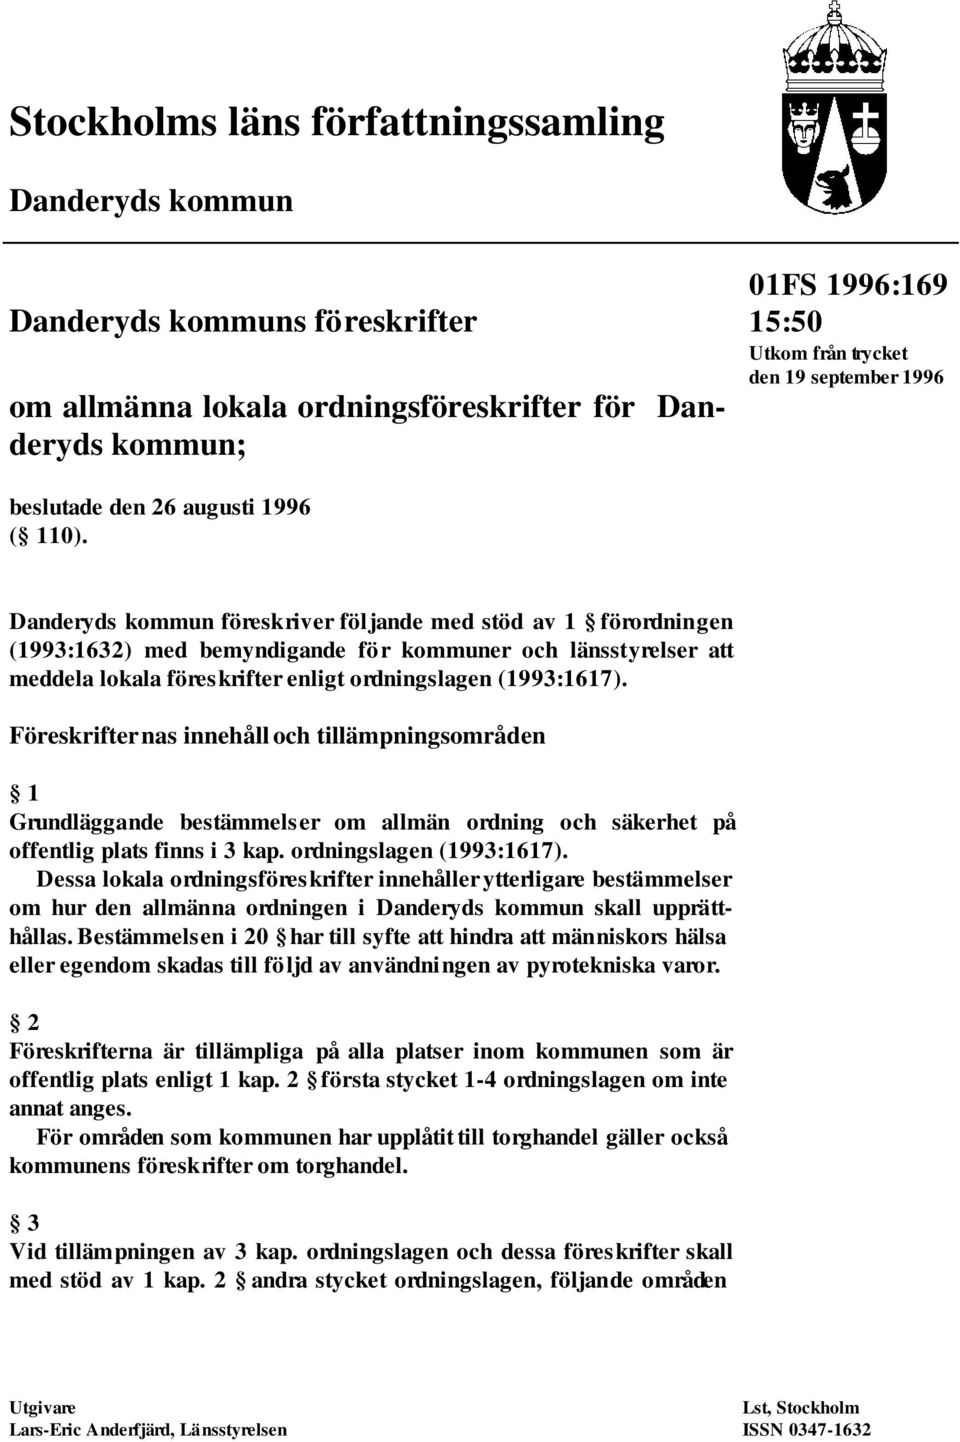 Danderyds kommun föreskriver följande med stöd av 1 förordningen (1993:1632) med bemyndigande för kommuner och länsstyrelser att meddela lokala föreskrifter enligt ordningslagen (1993:1617).